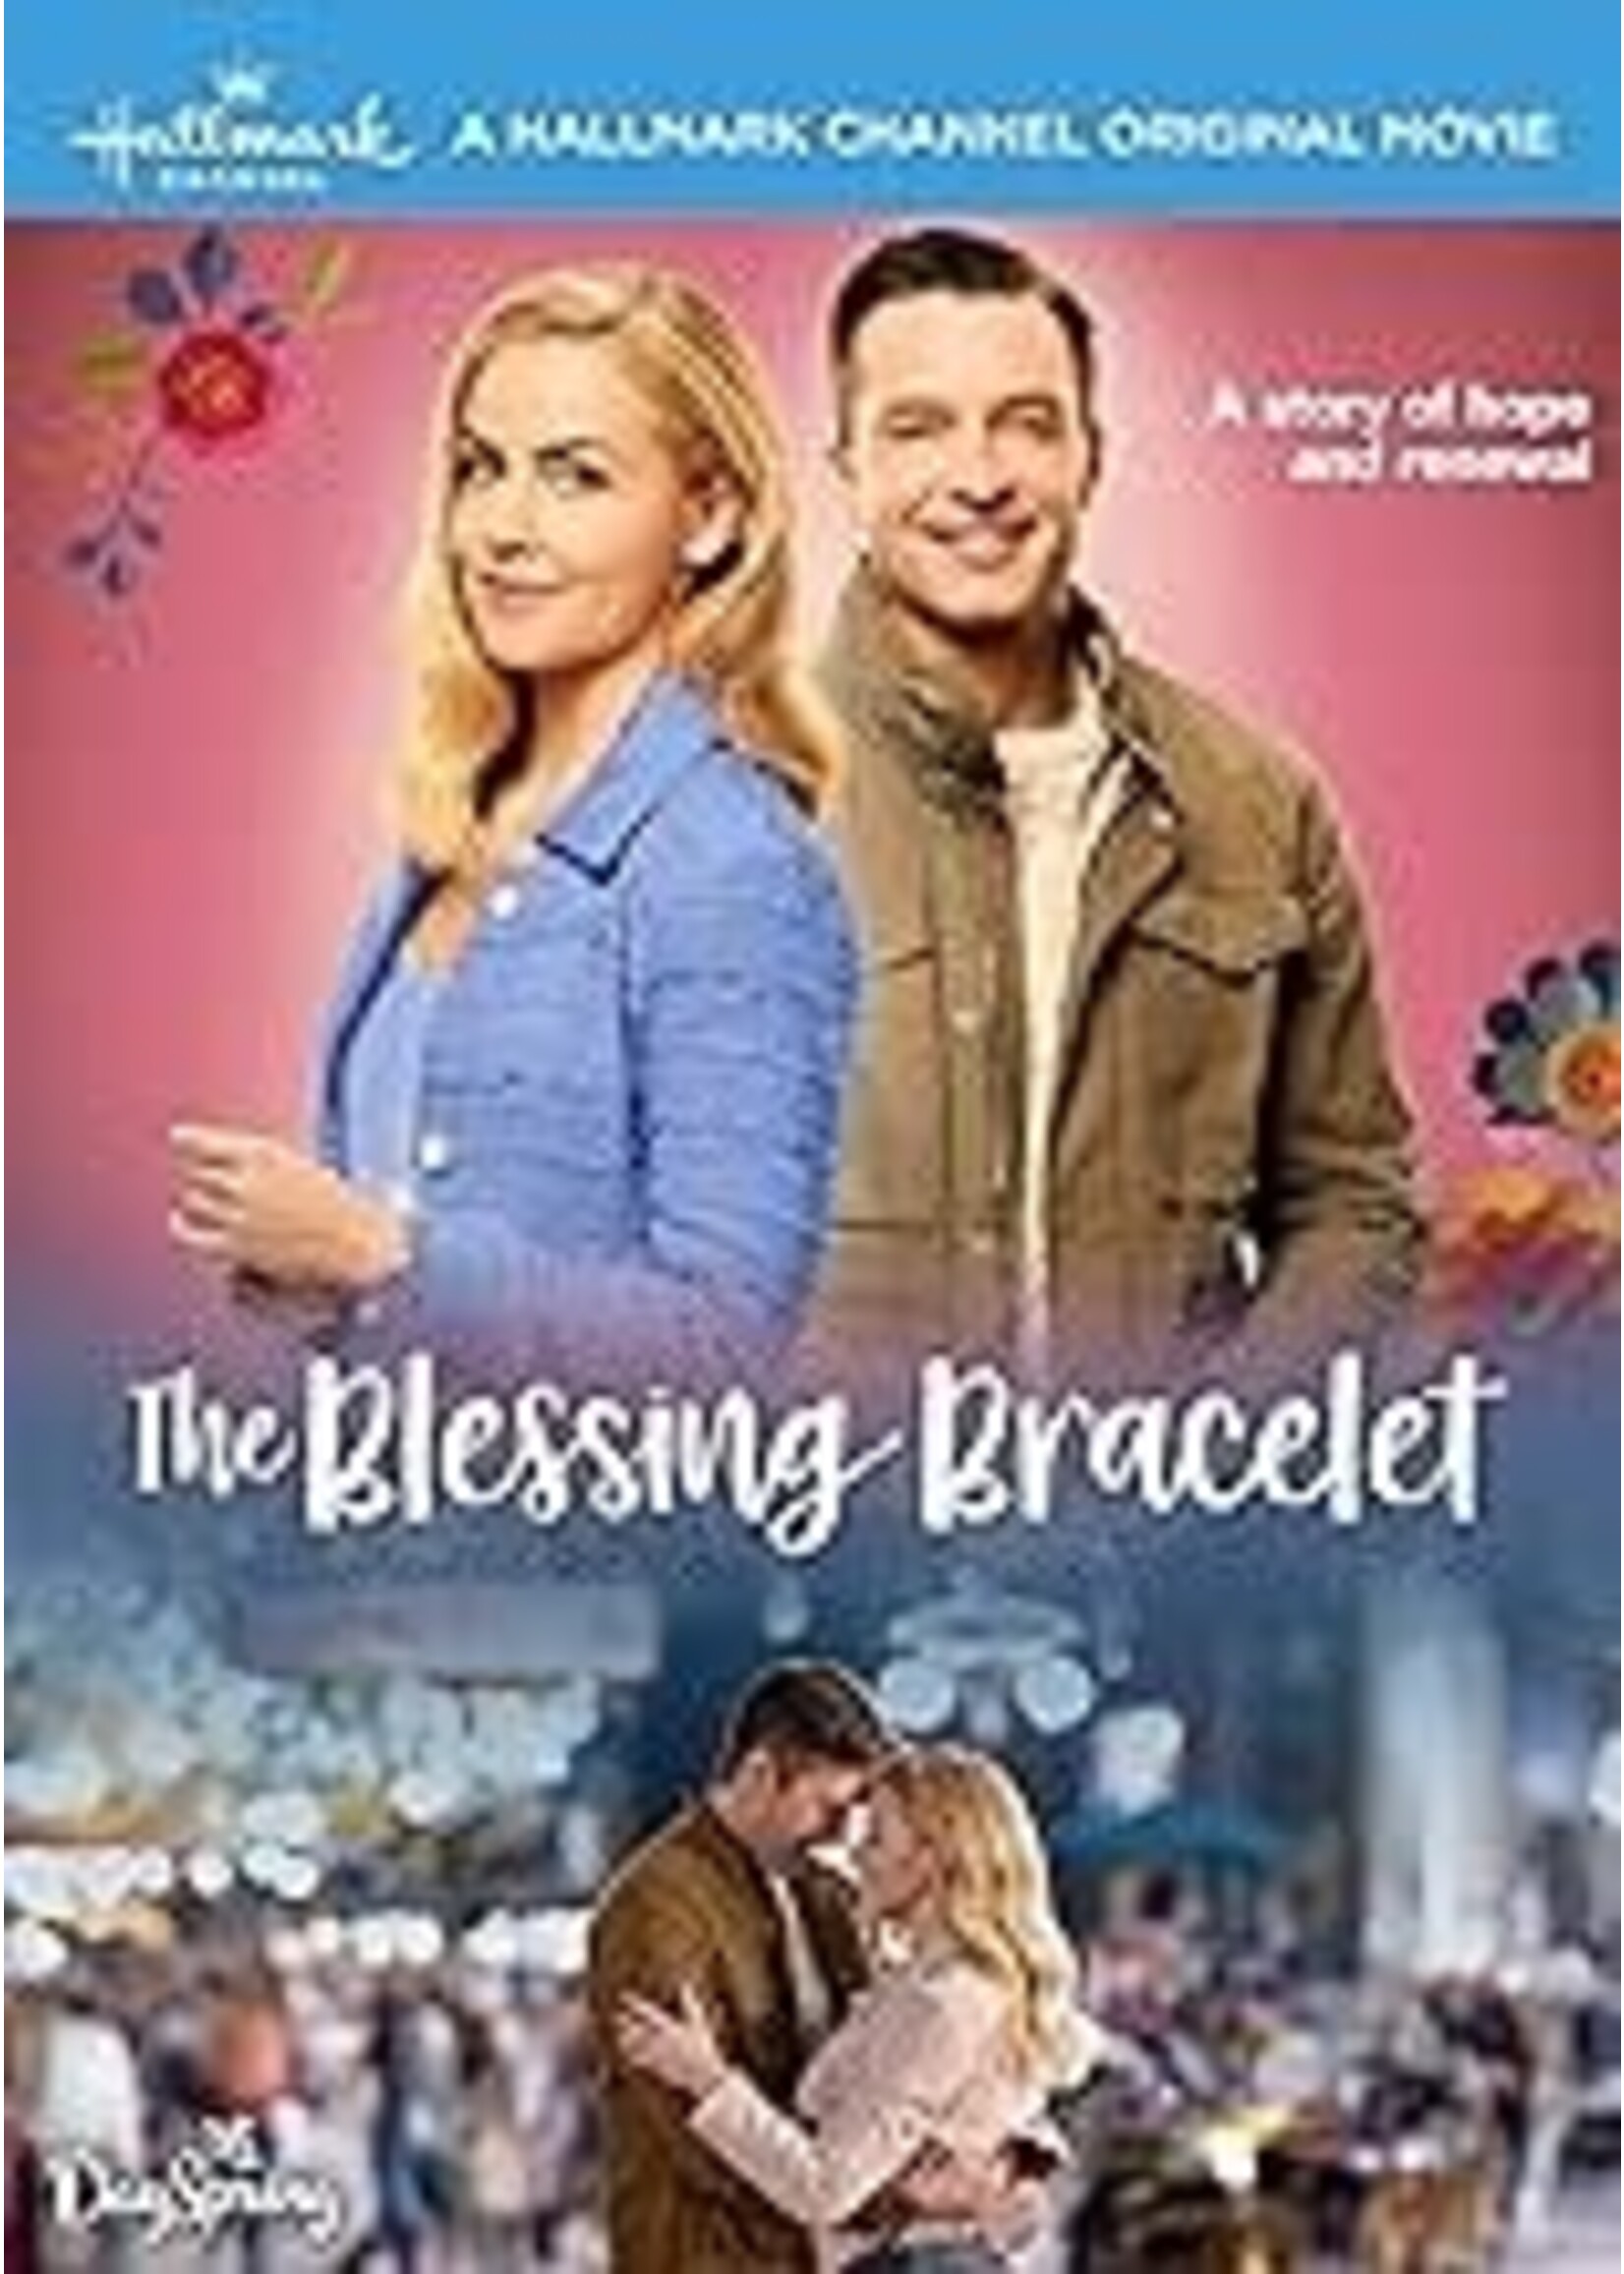 Blessing Bracelet (DVD)